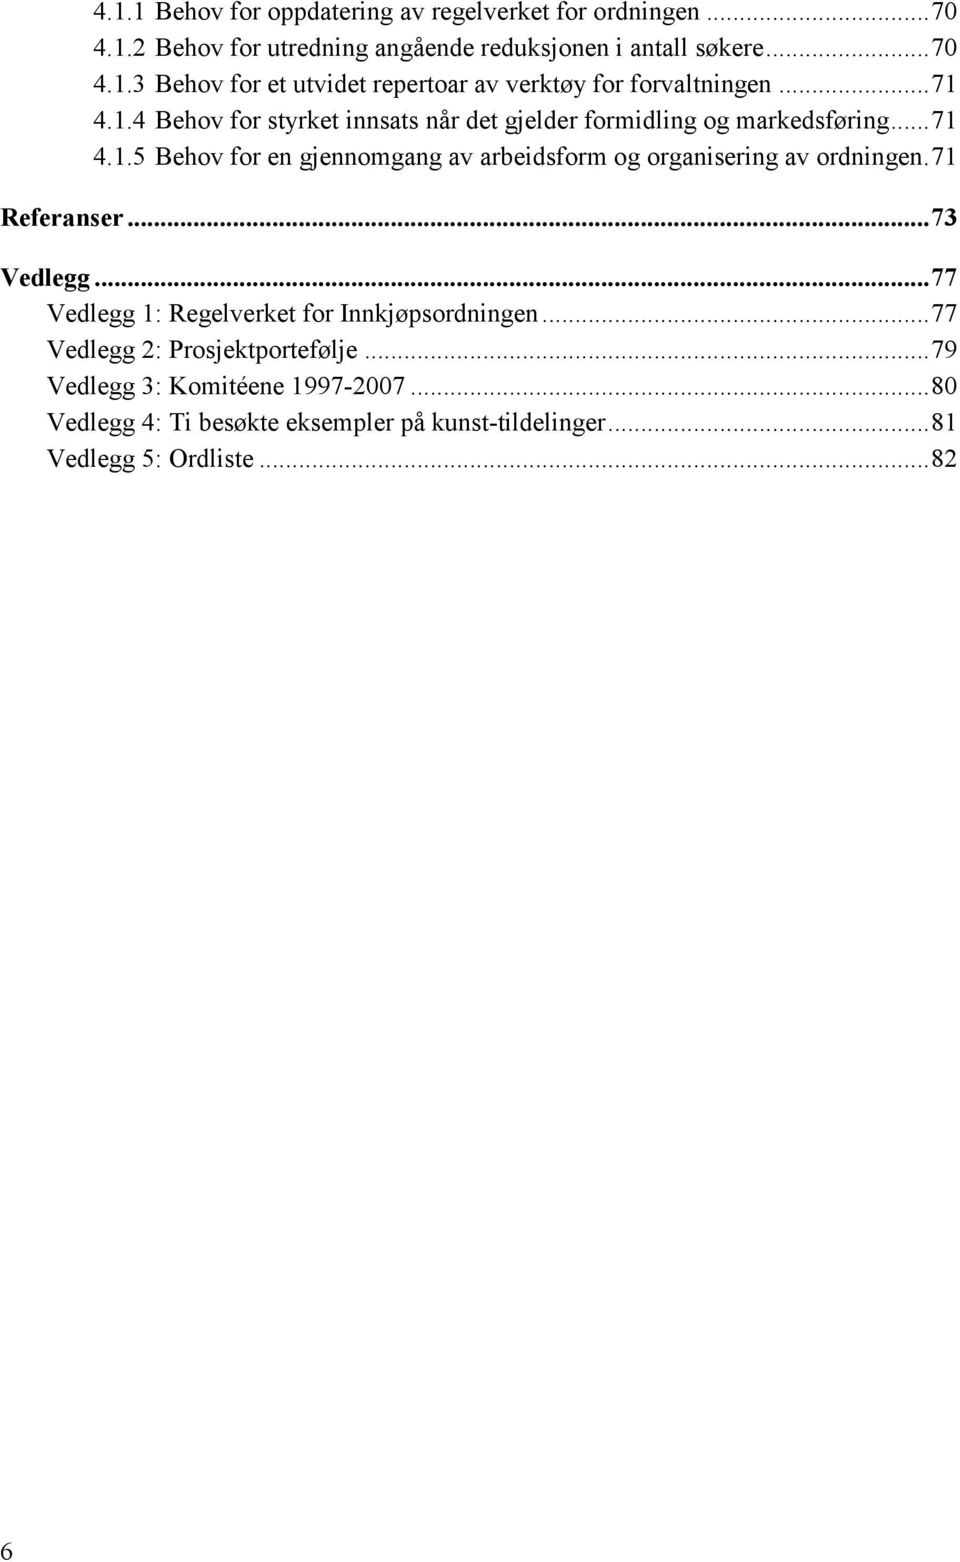 71 Referanser... 73 Vedlegg... 77 Vedlegg 1: Regelverket for Innkjøpsordningen... 77 Vedlegg 2: Prosjektportefølje... 79 Vedlegg 3: Komitéene 1997-2007.